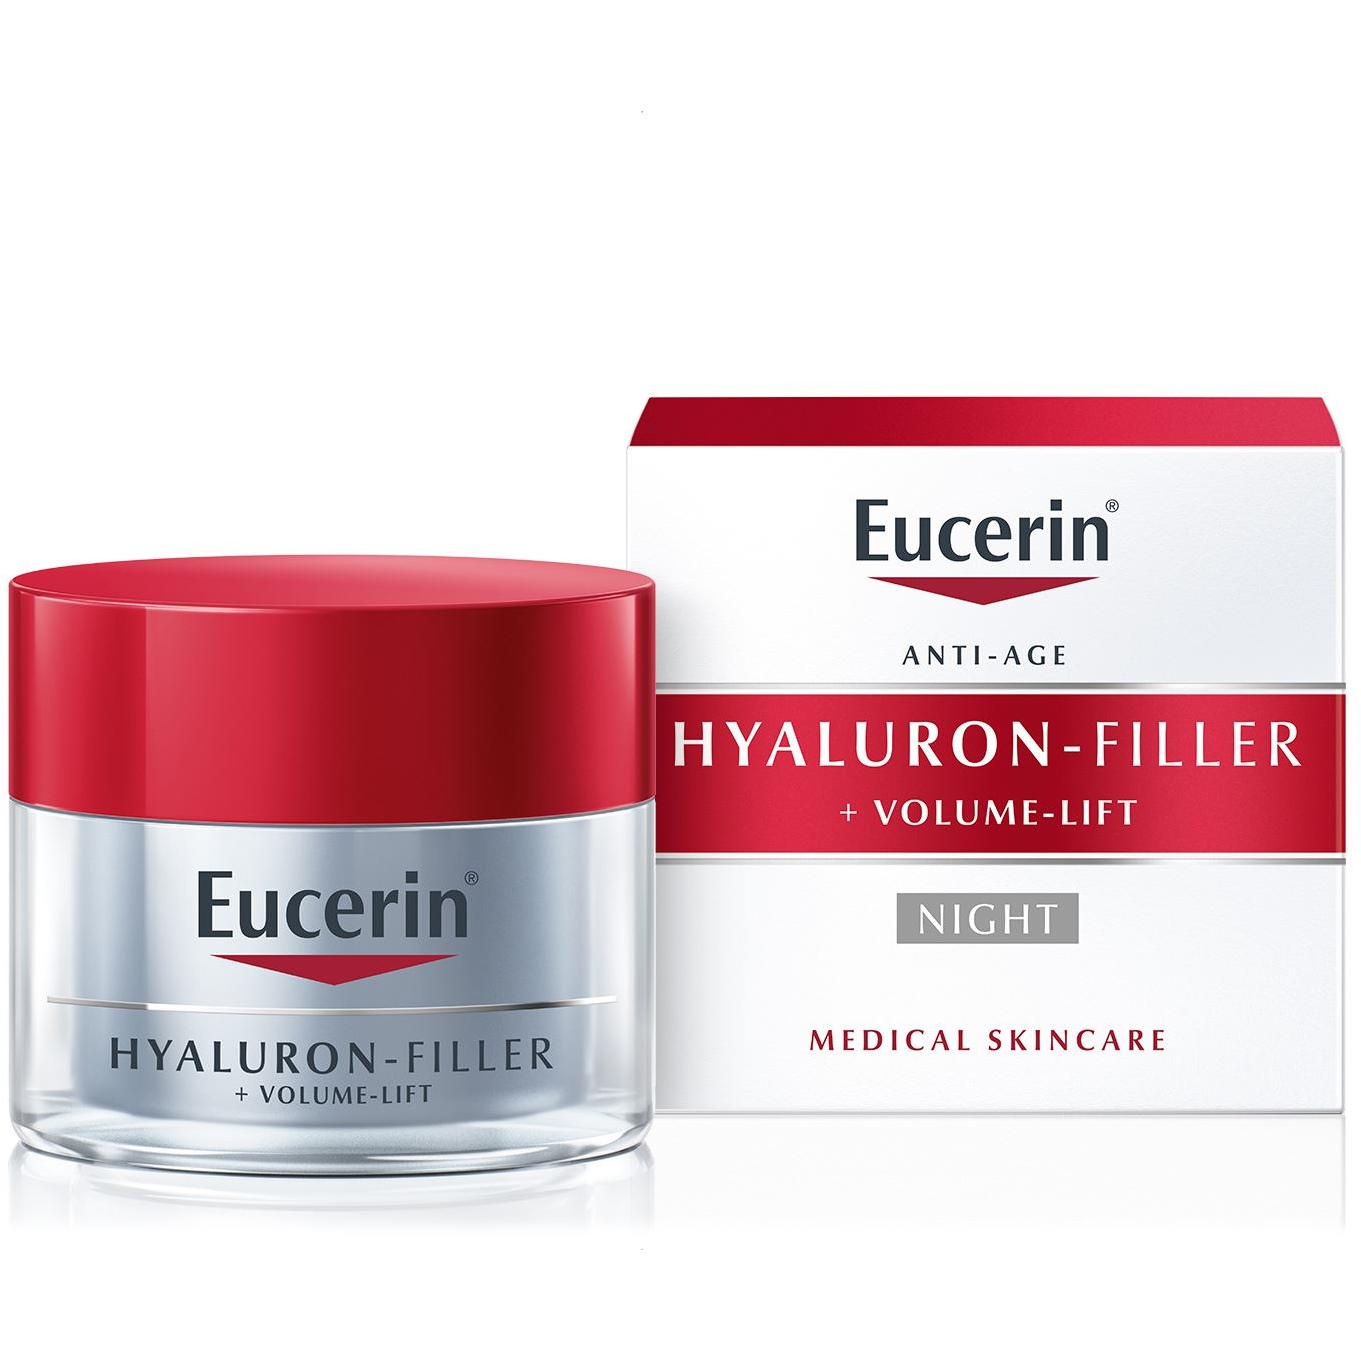 Eucerin Hyaluron-Filler + Volume-Lift Night 